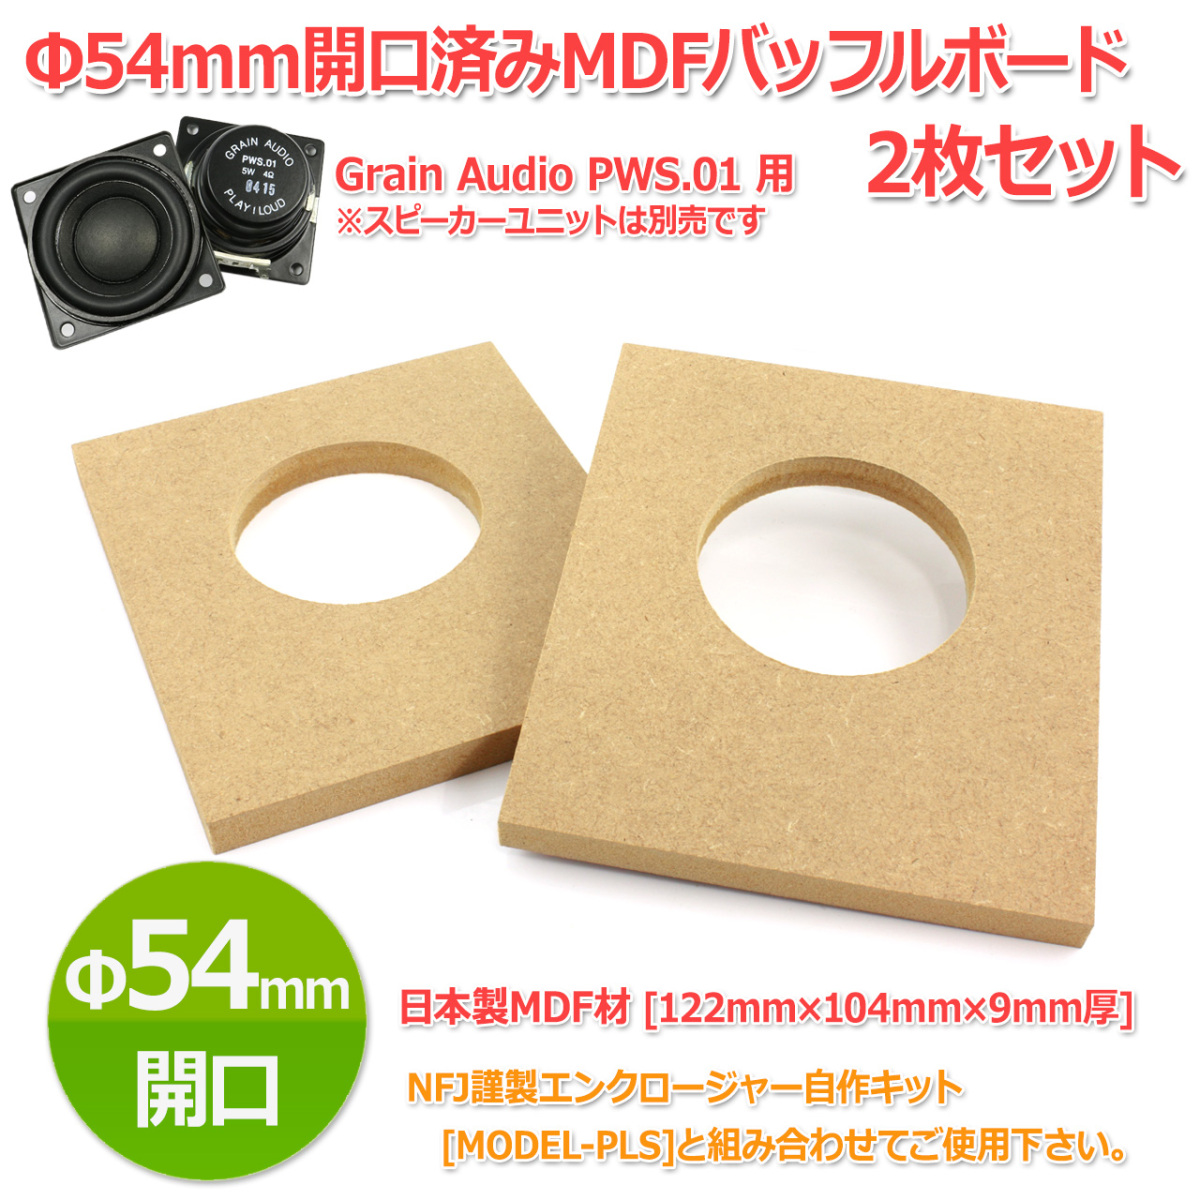 Φ54mm opening settled MDF baffle board [122mm×104mm×9mm thickness ]2 pieces set Grain Audio PWS.01 speaker unit correspondence 